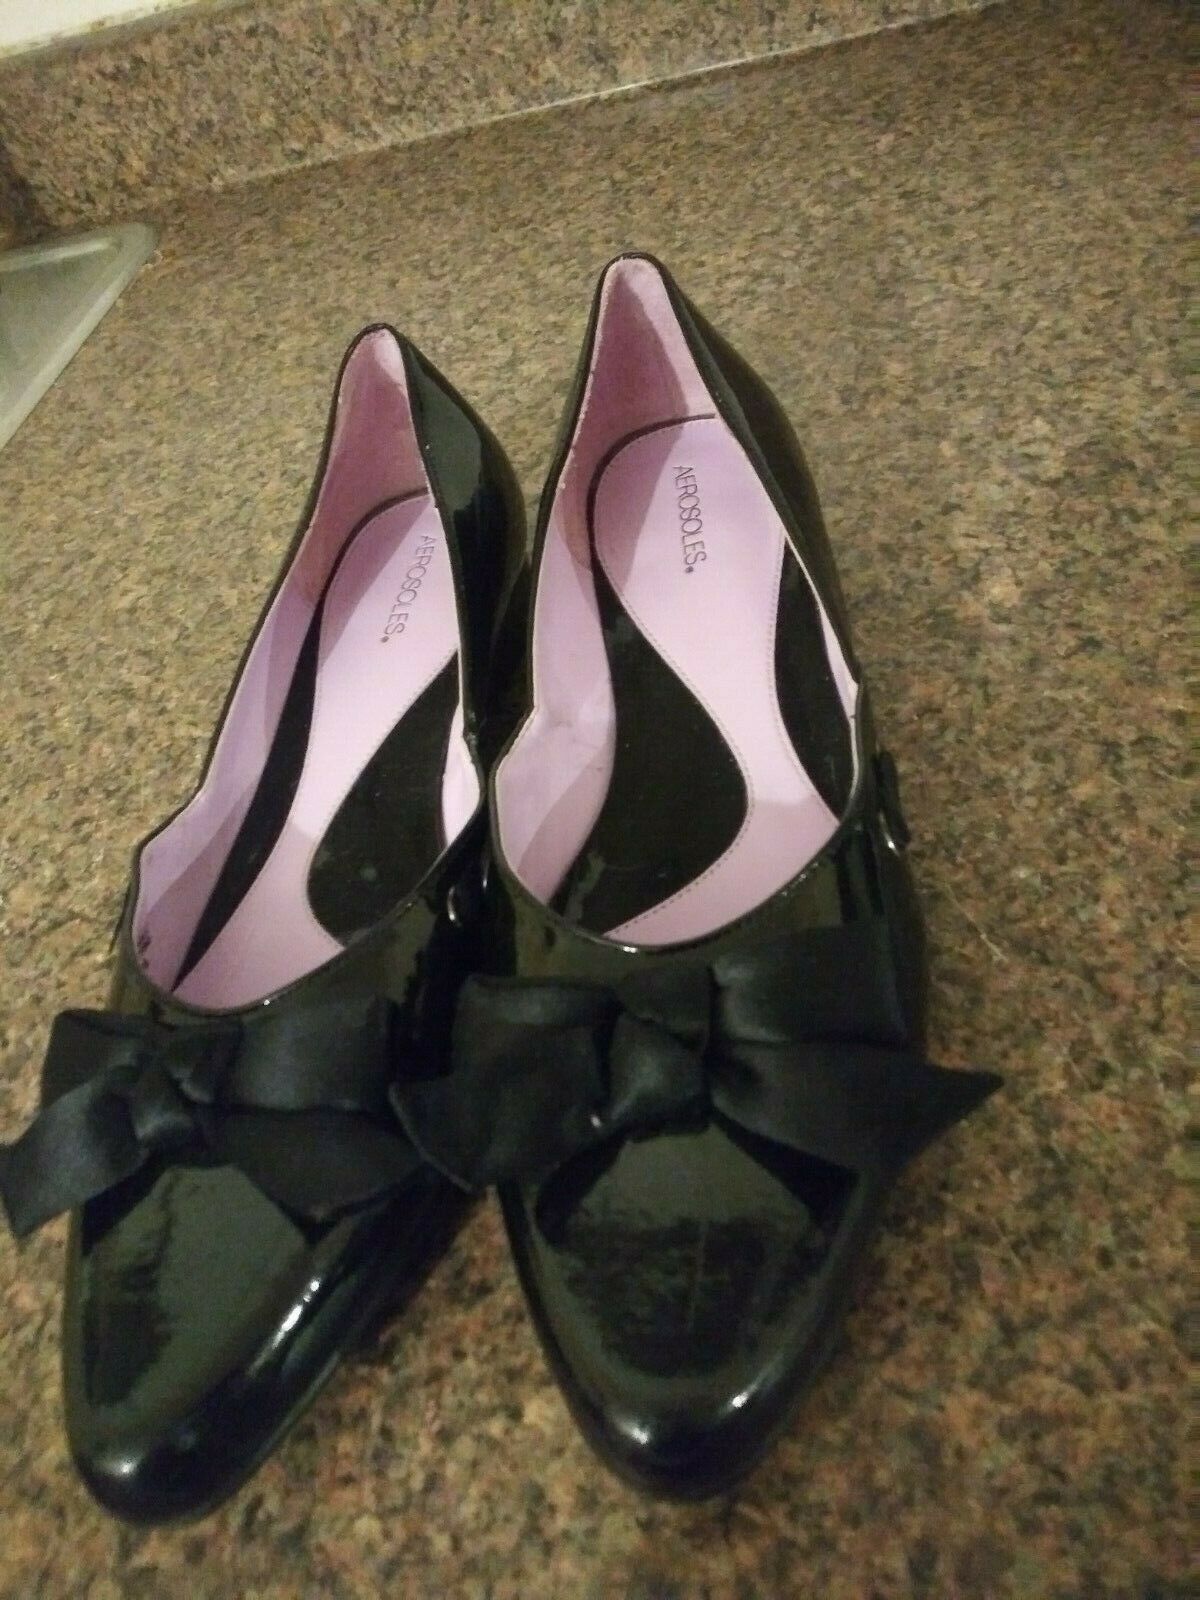 Aerosoles Women's Black Low Heels Shoe Bow Size 7.5M